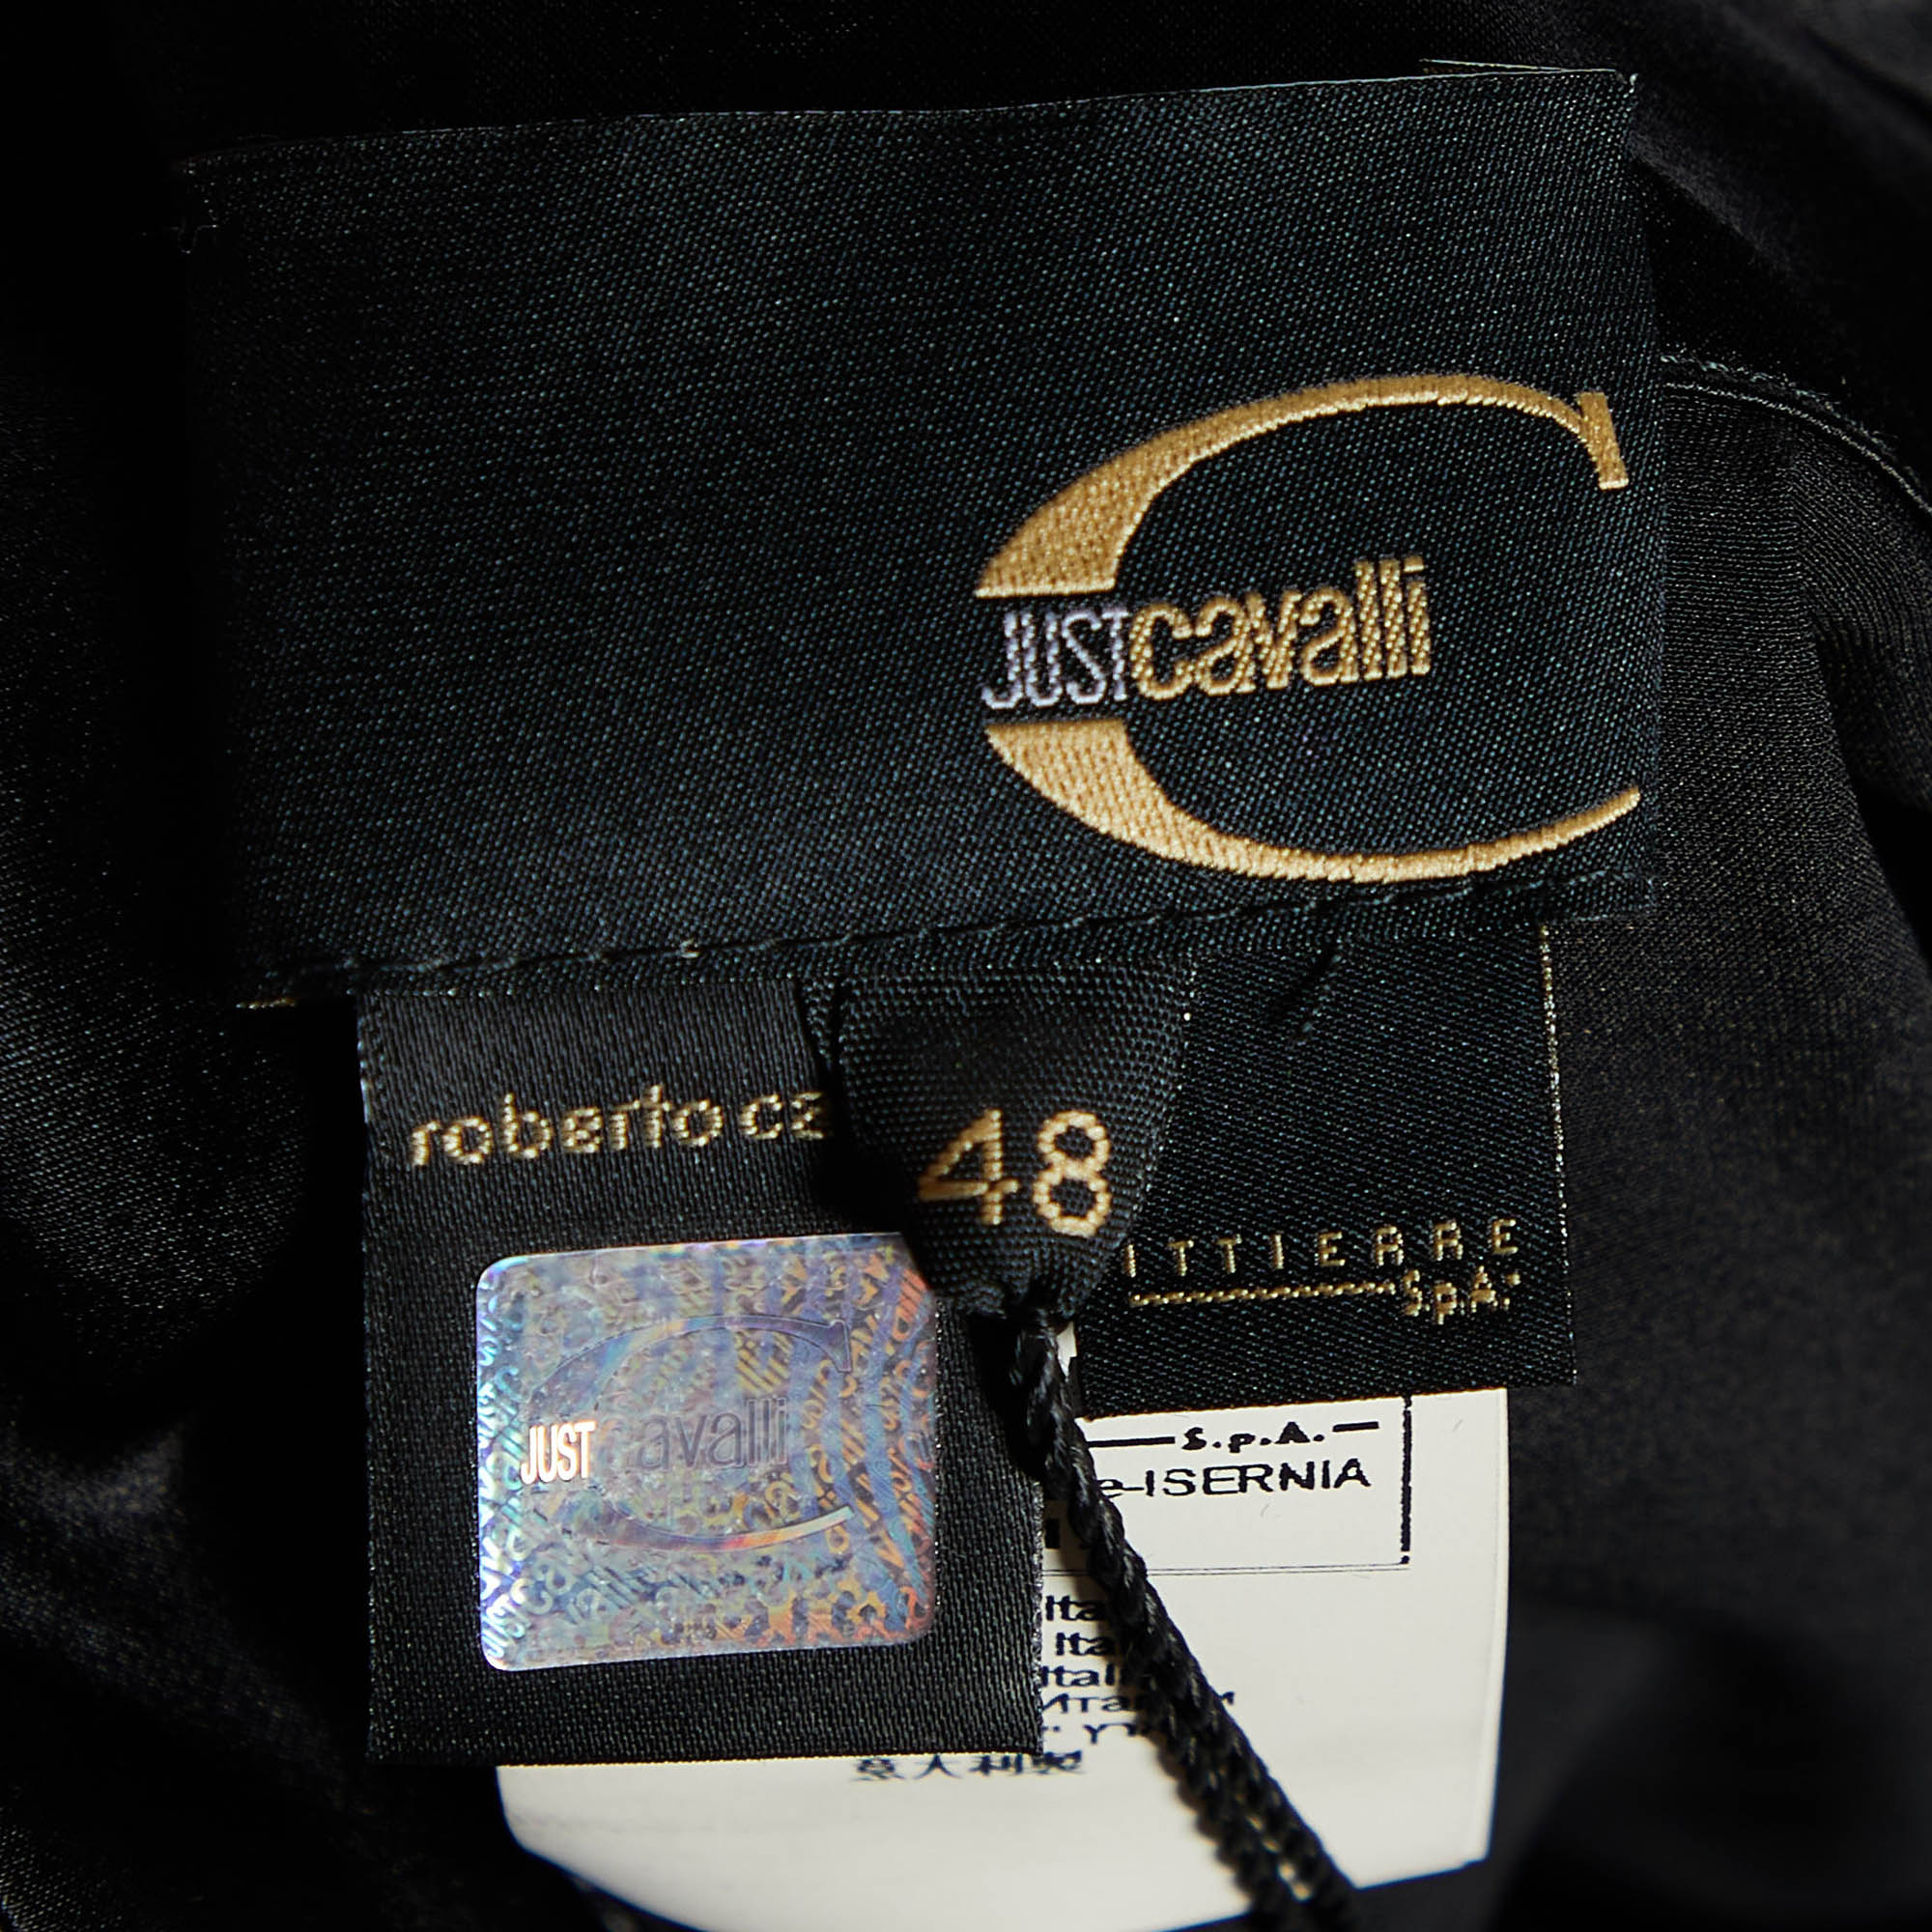 Just Cavalli Black Silk Satin Ruffled Mini Dress L